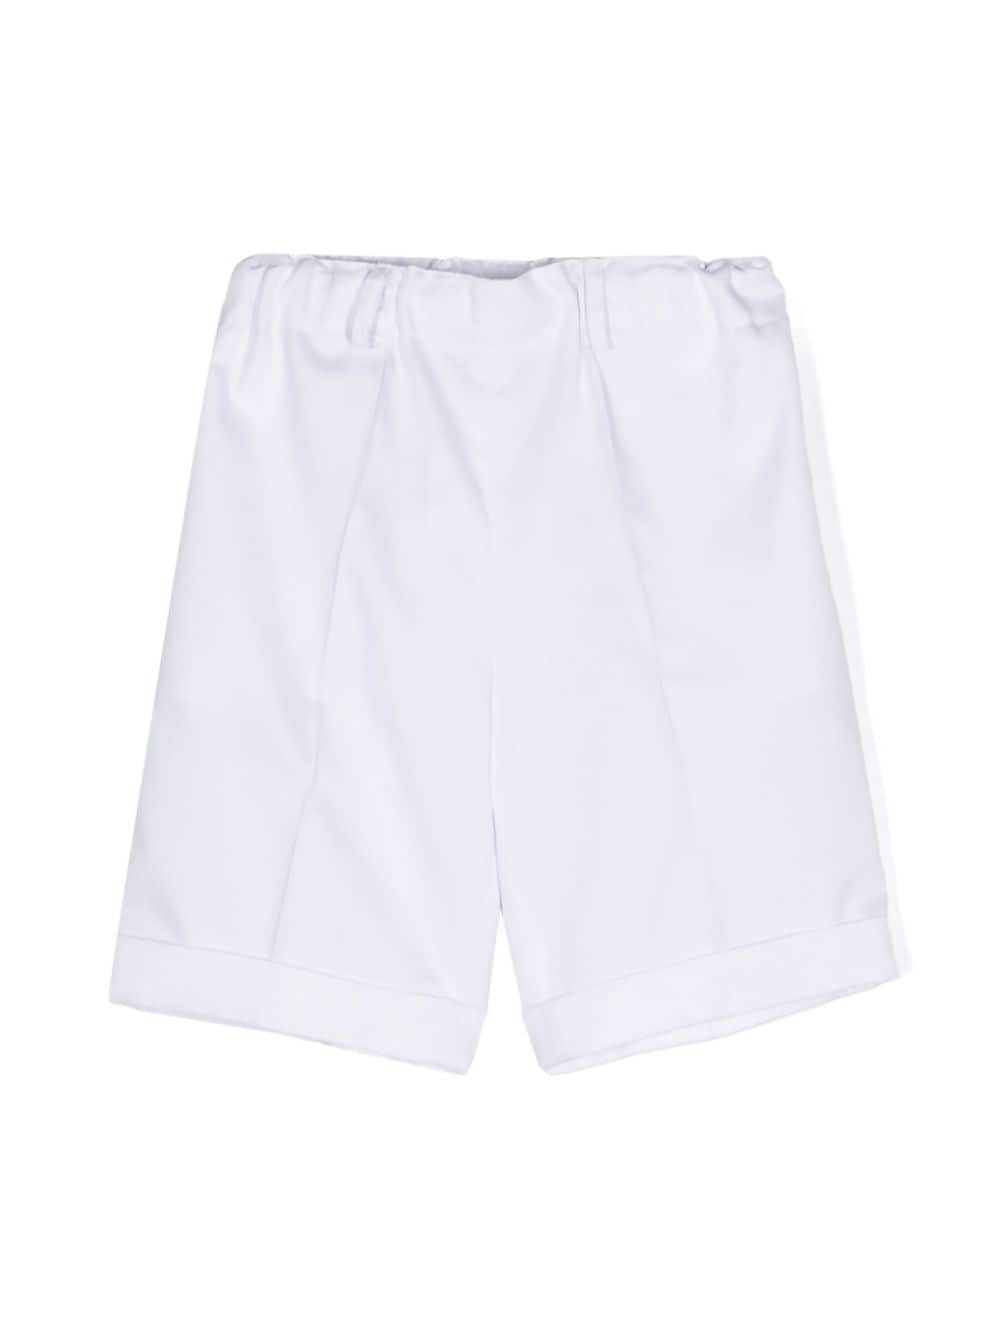 Siola twill cotton shorts - White von Siola